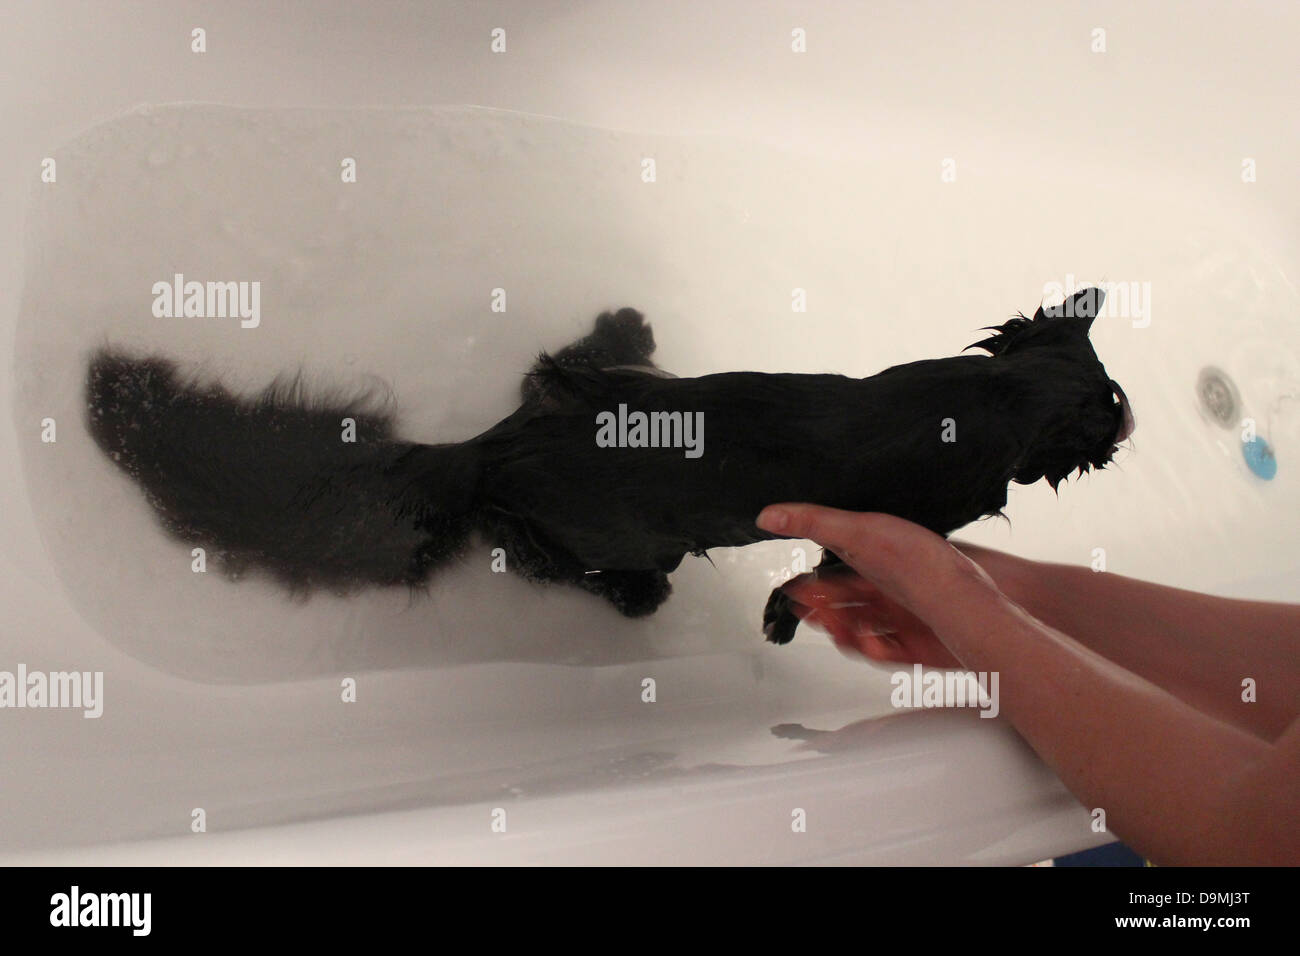 Bild von einer schwarzen Katze in Baden waschen Stockfoto